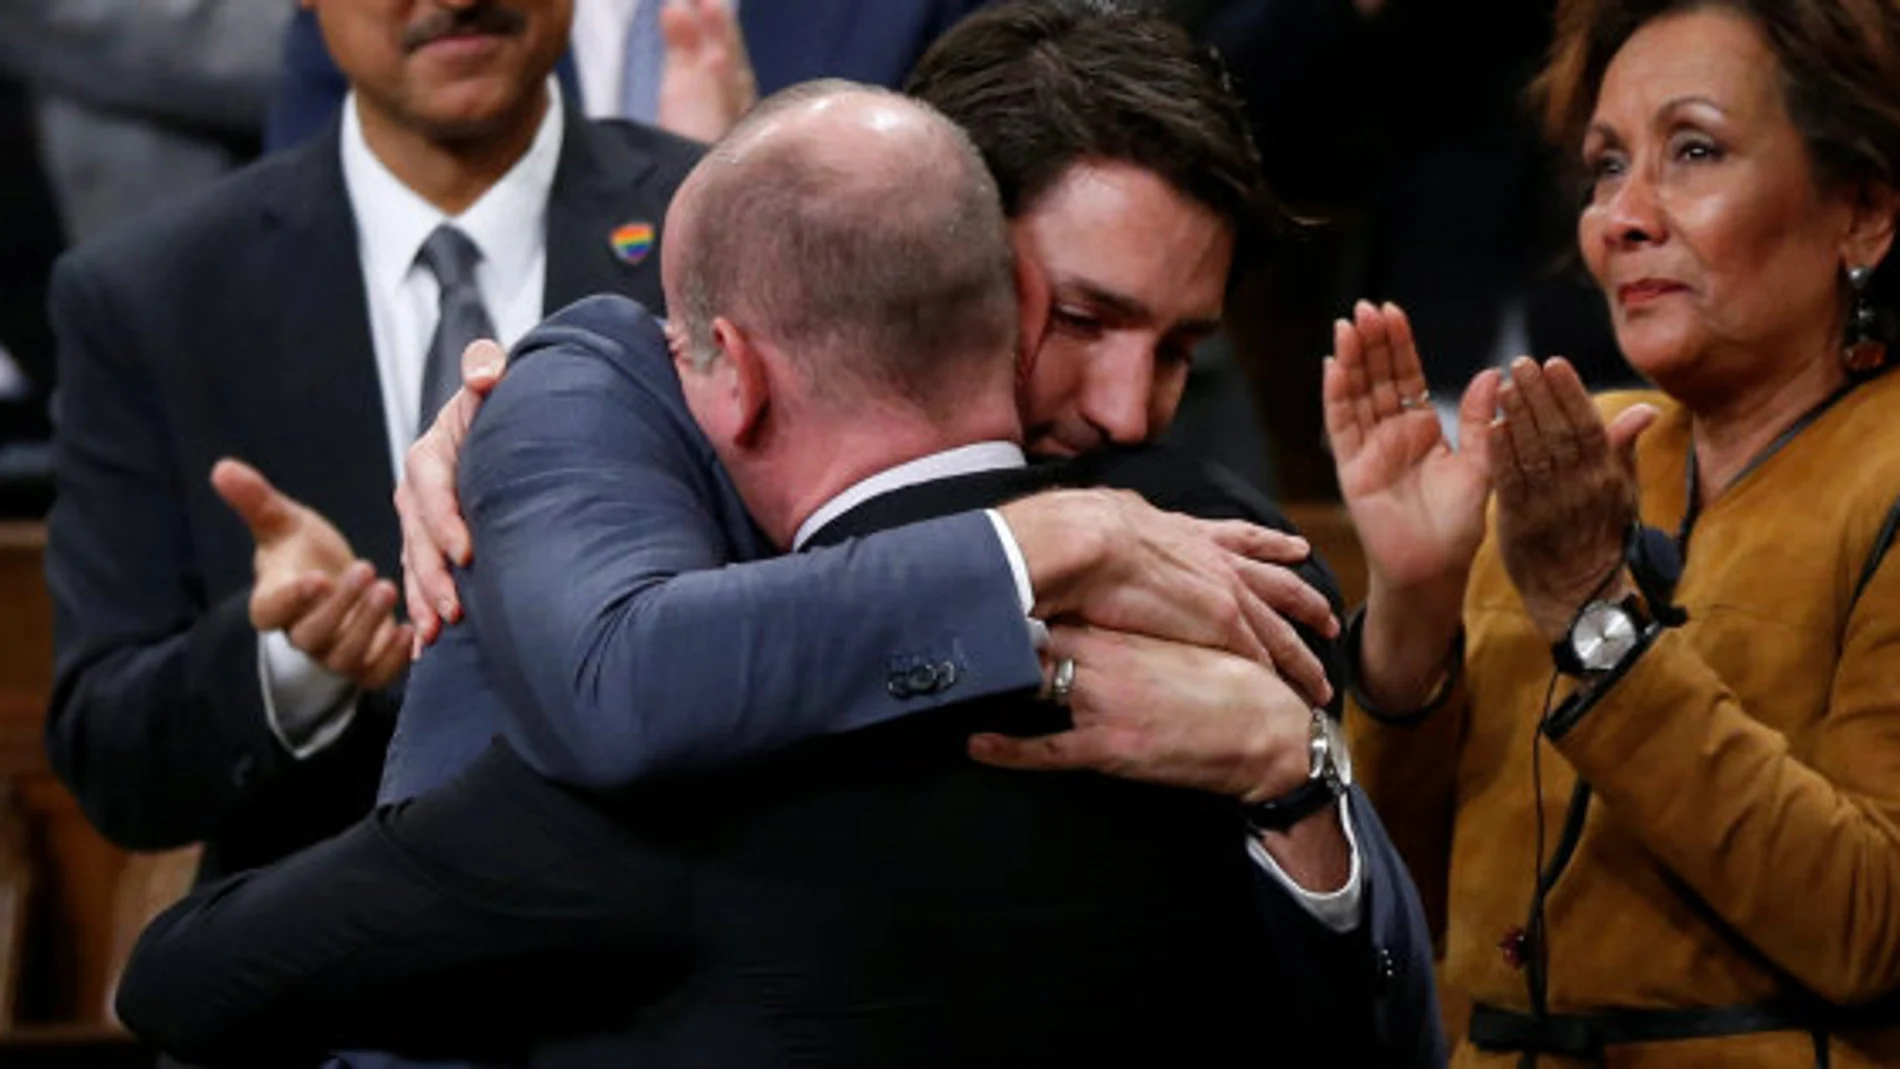 Trudeau emocionado mientras pide disculpas a la comunidad LGTB